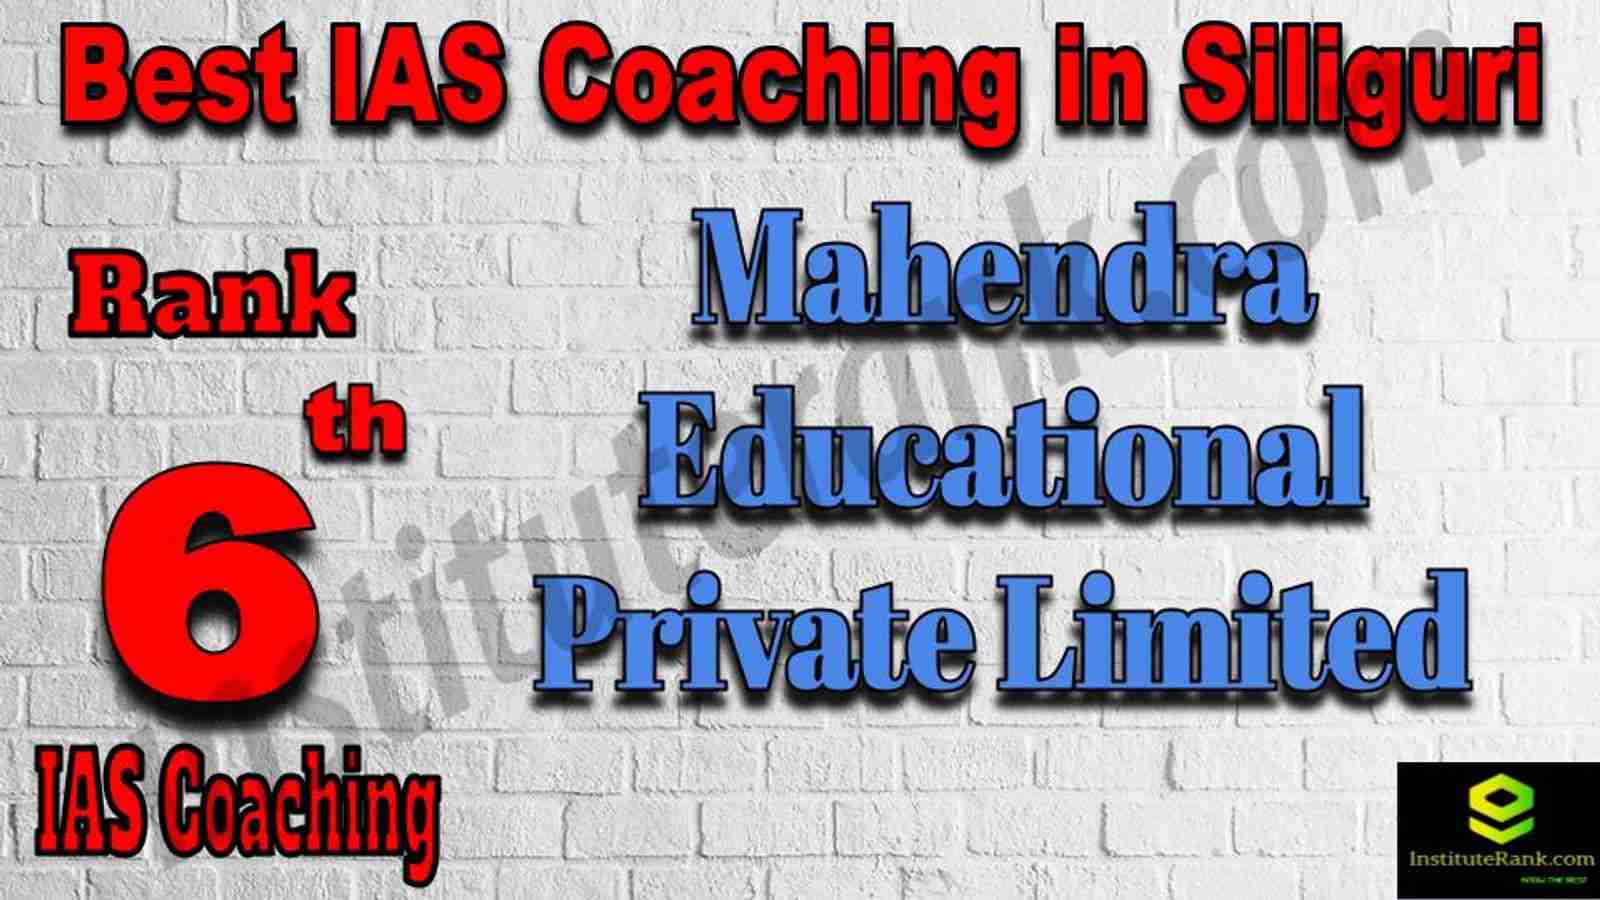 6th Best IAS Coaching in Siliguri